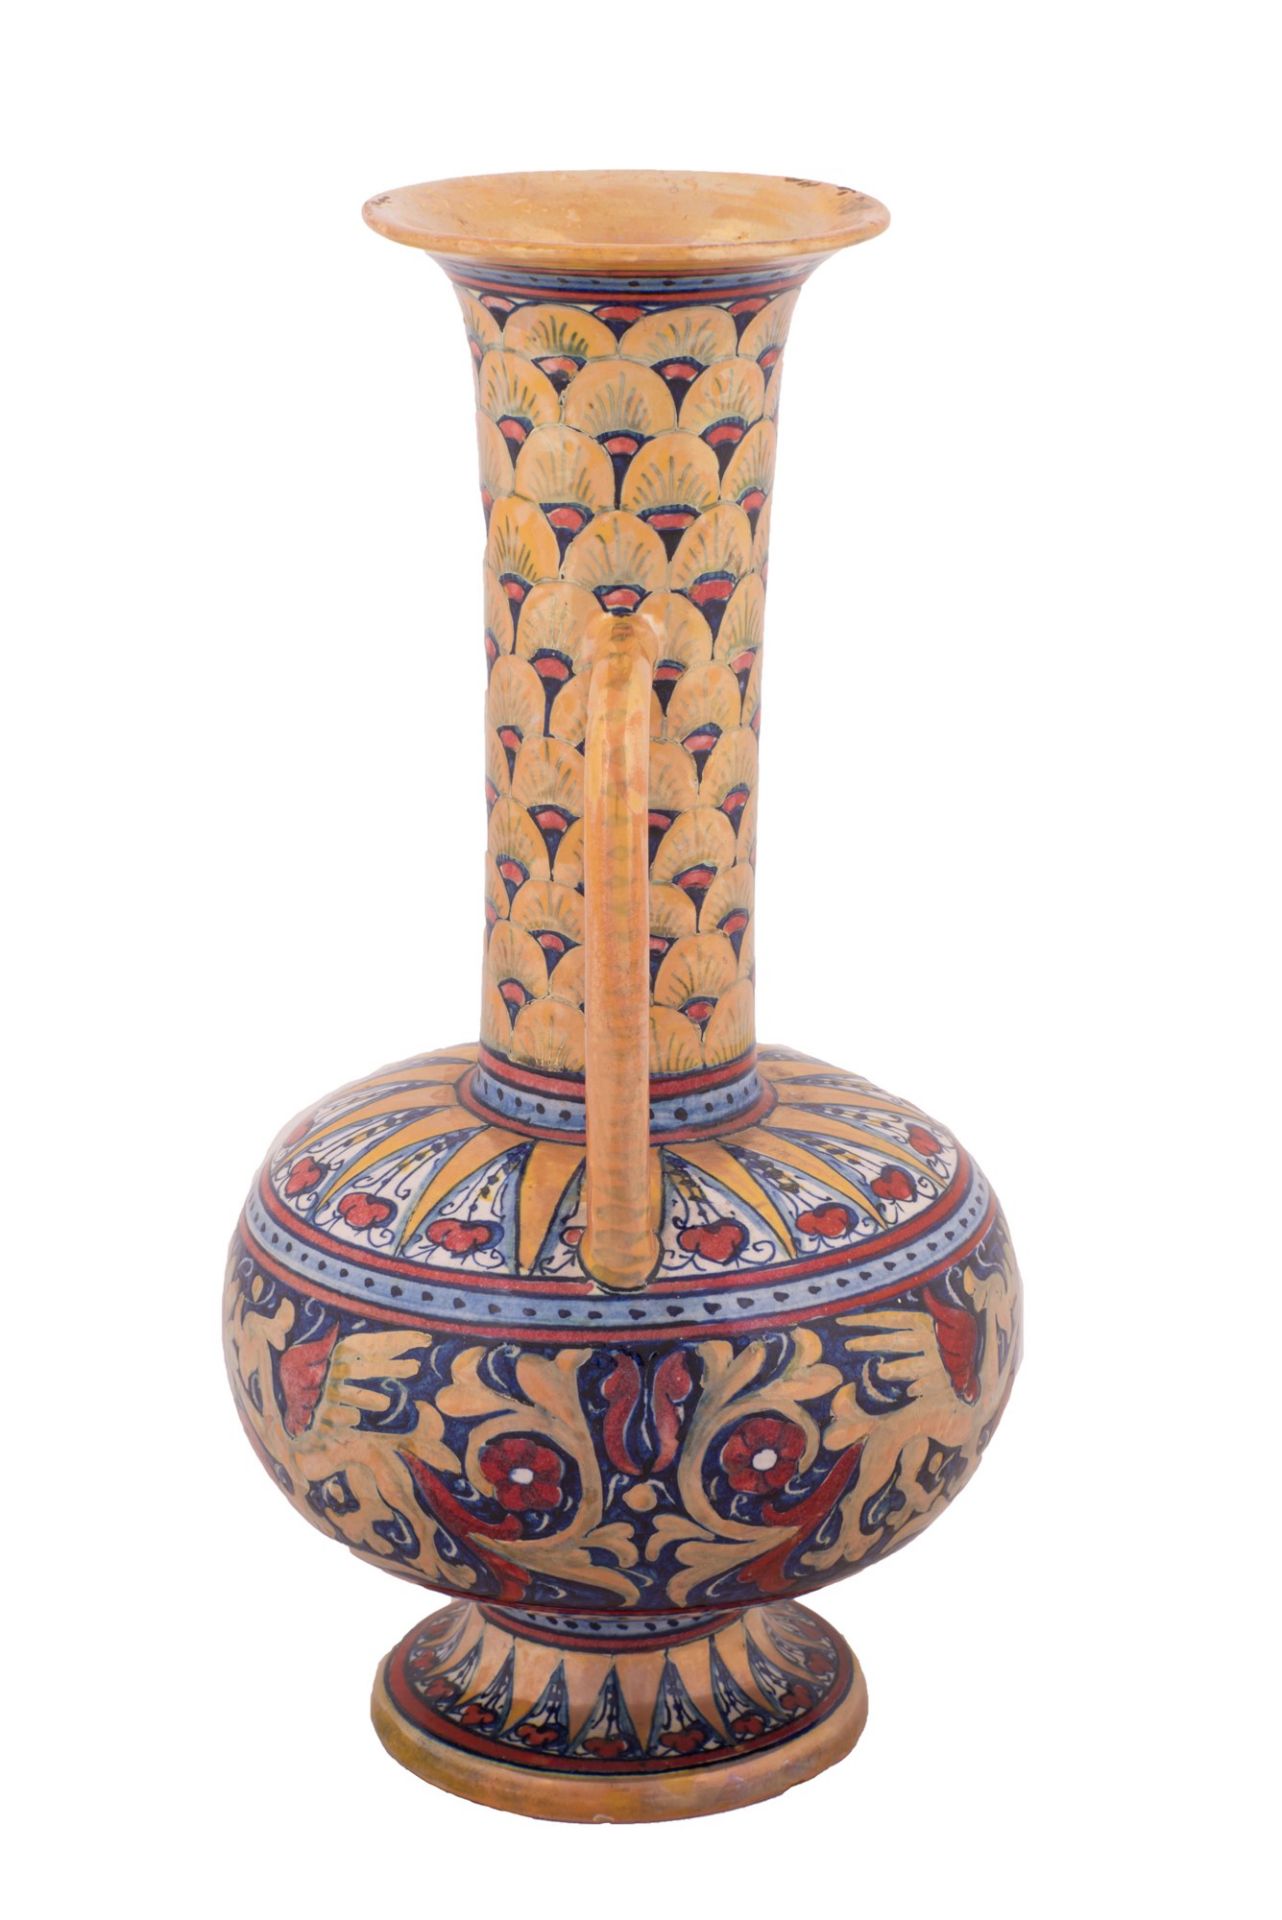  Vaso a tromba in ceramica dipinta a lustro Gualdo Tadino Società Mastro Giorgio - Image 2 of 3